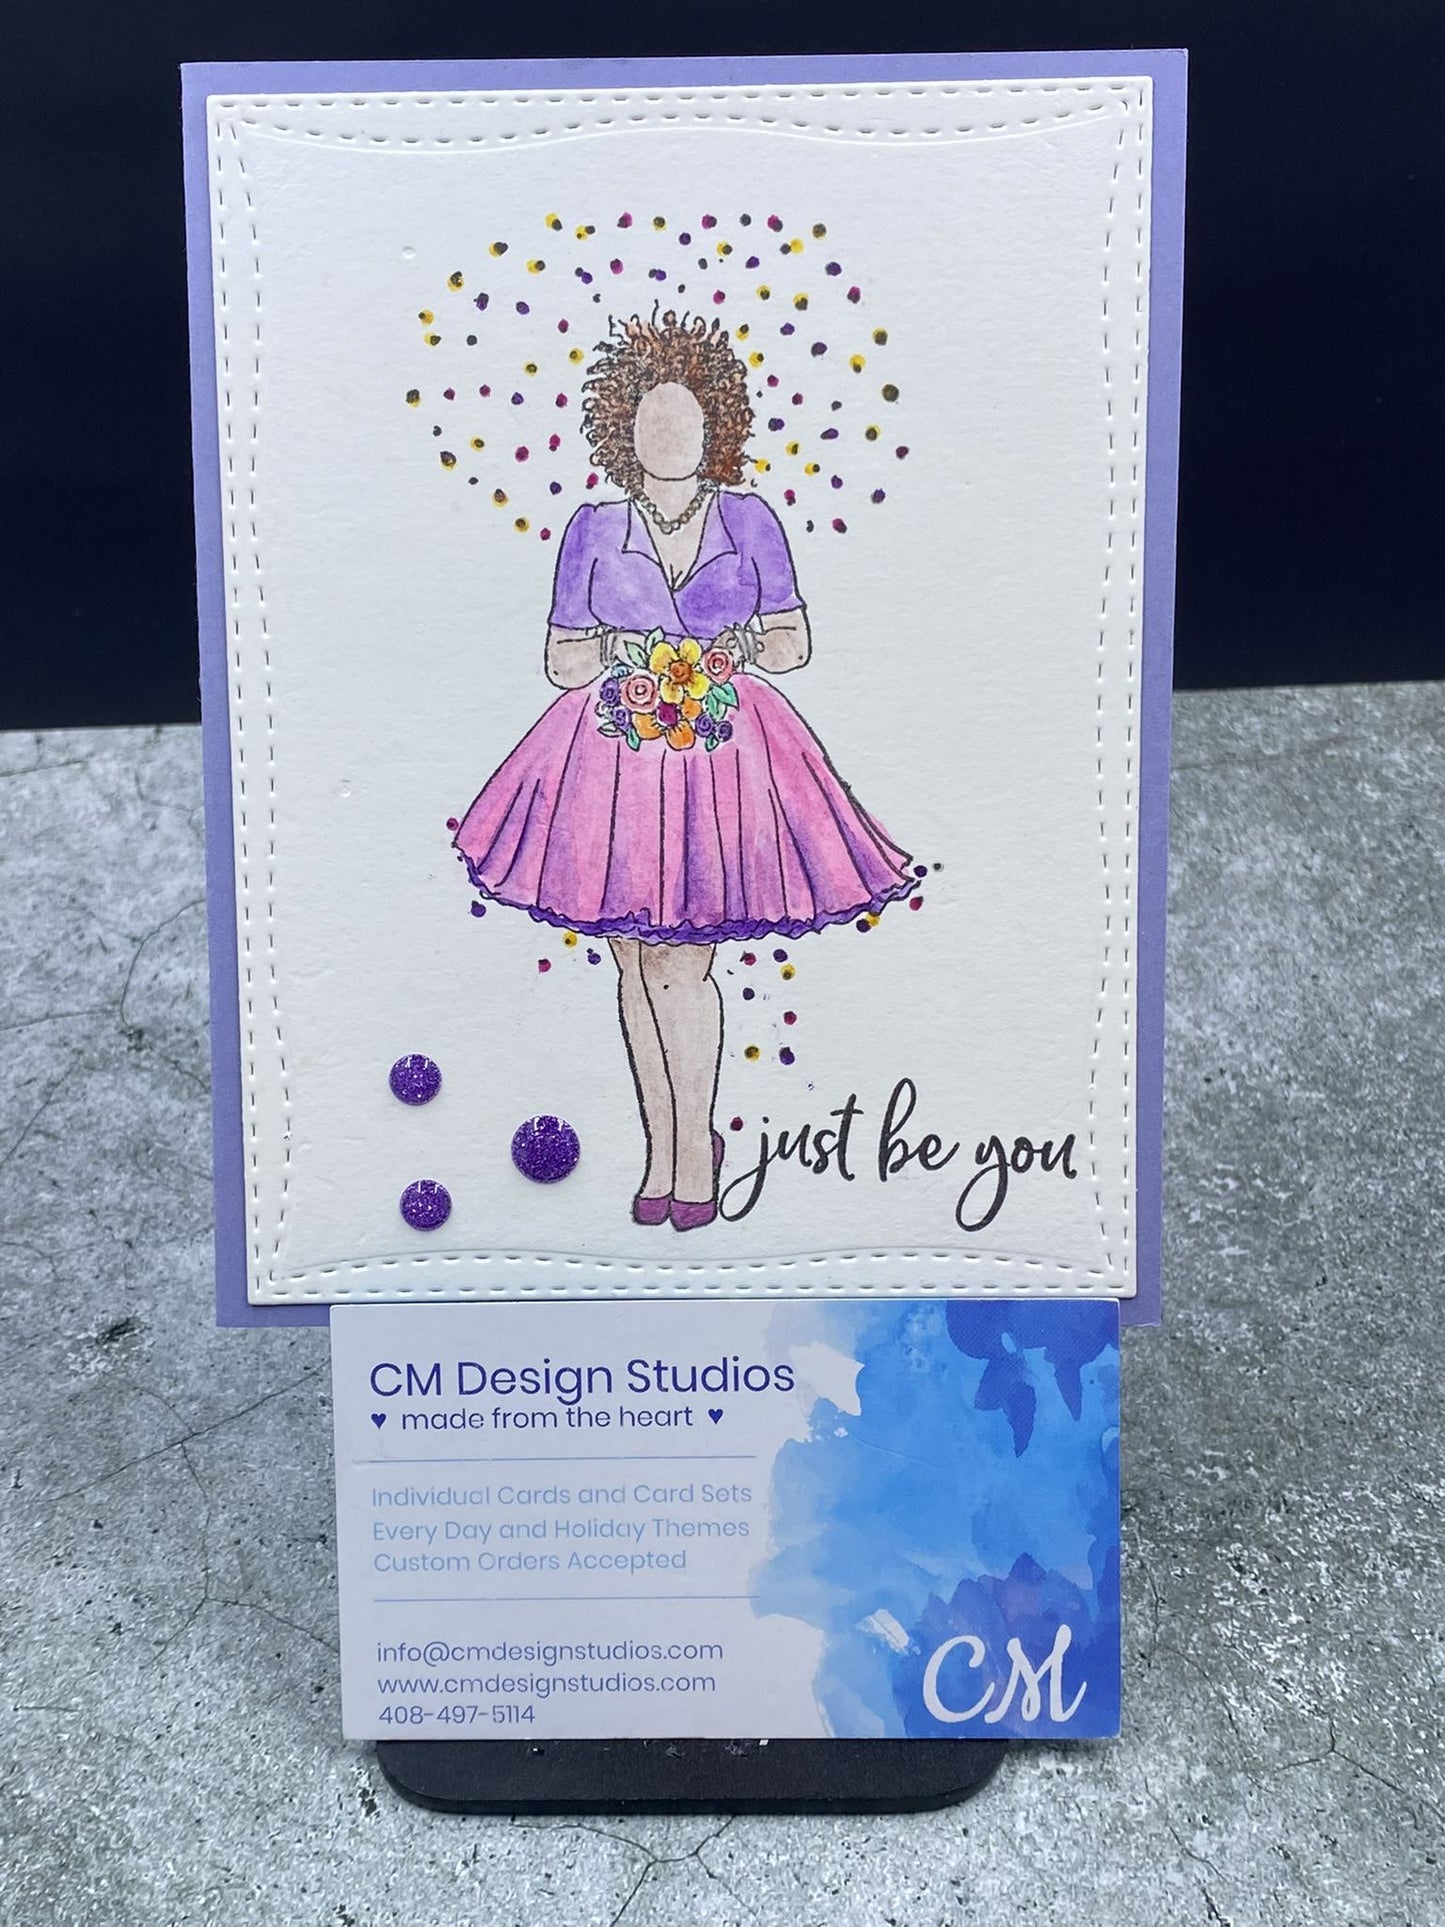 Encouragement Card - CM Design Studios